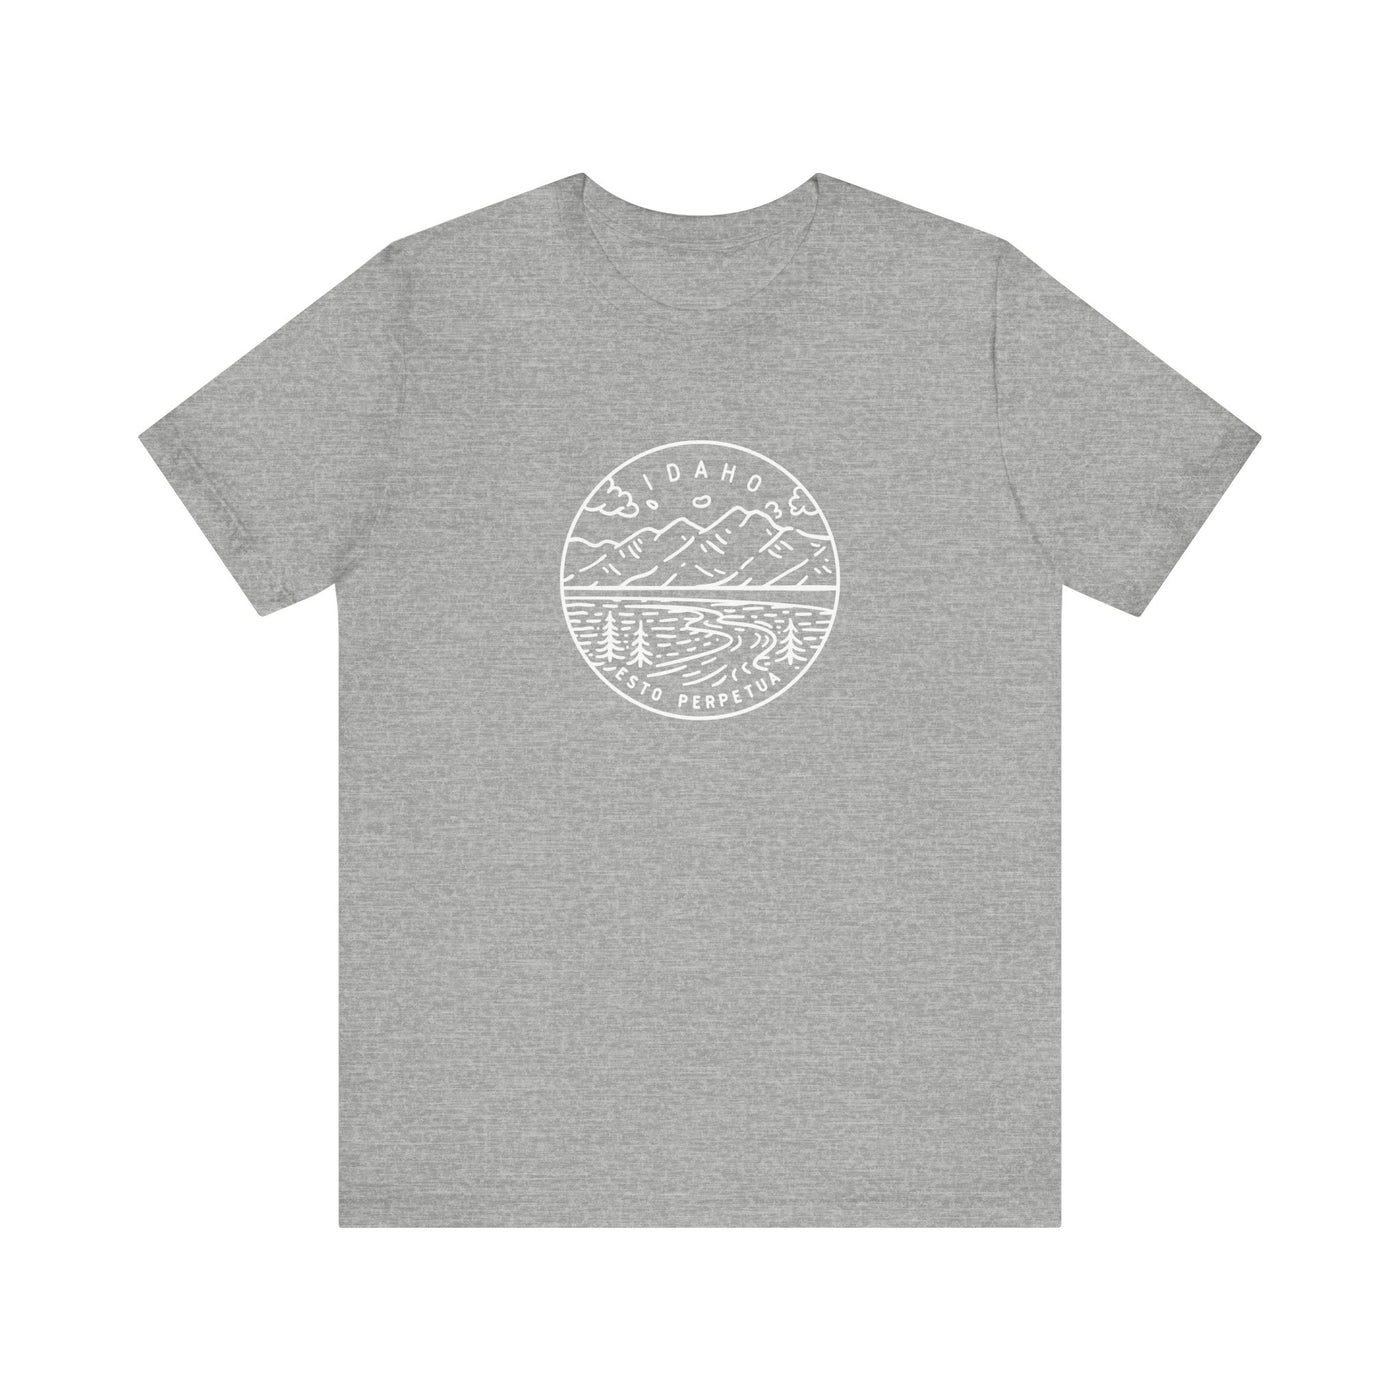 Idaho State Motto Unisex T-Shirt